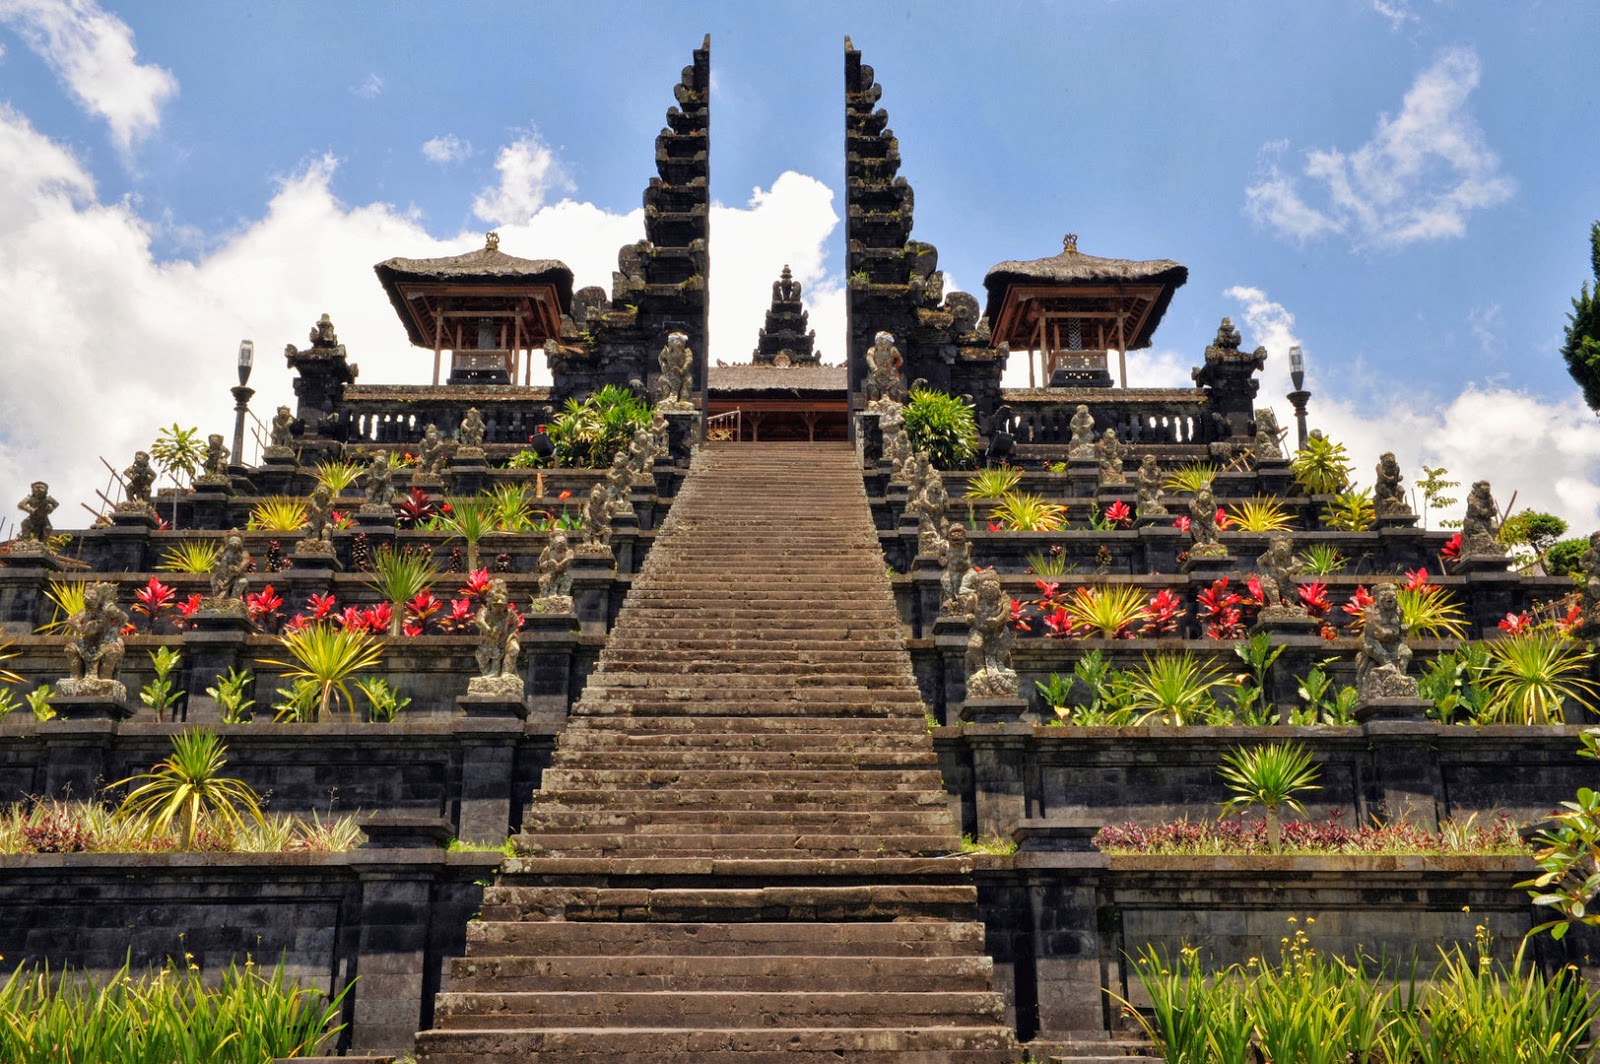 Wisata Pura Besakih: Keindahan Spiritual Bali yang Mengagumkan